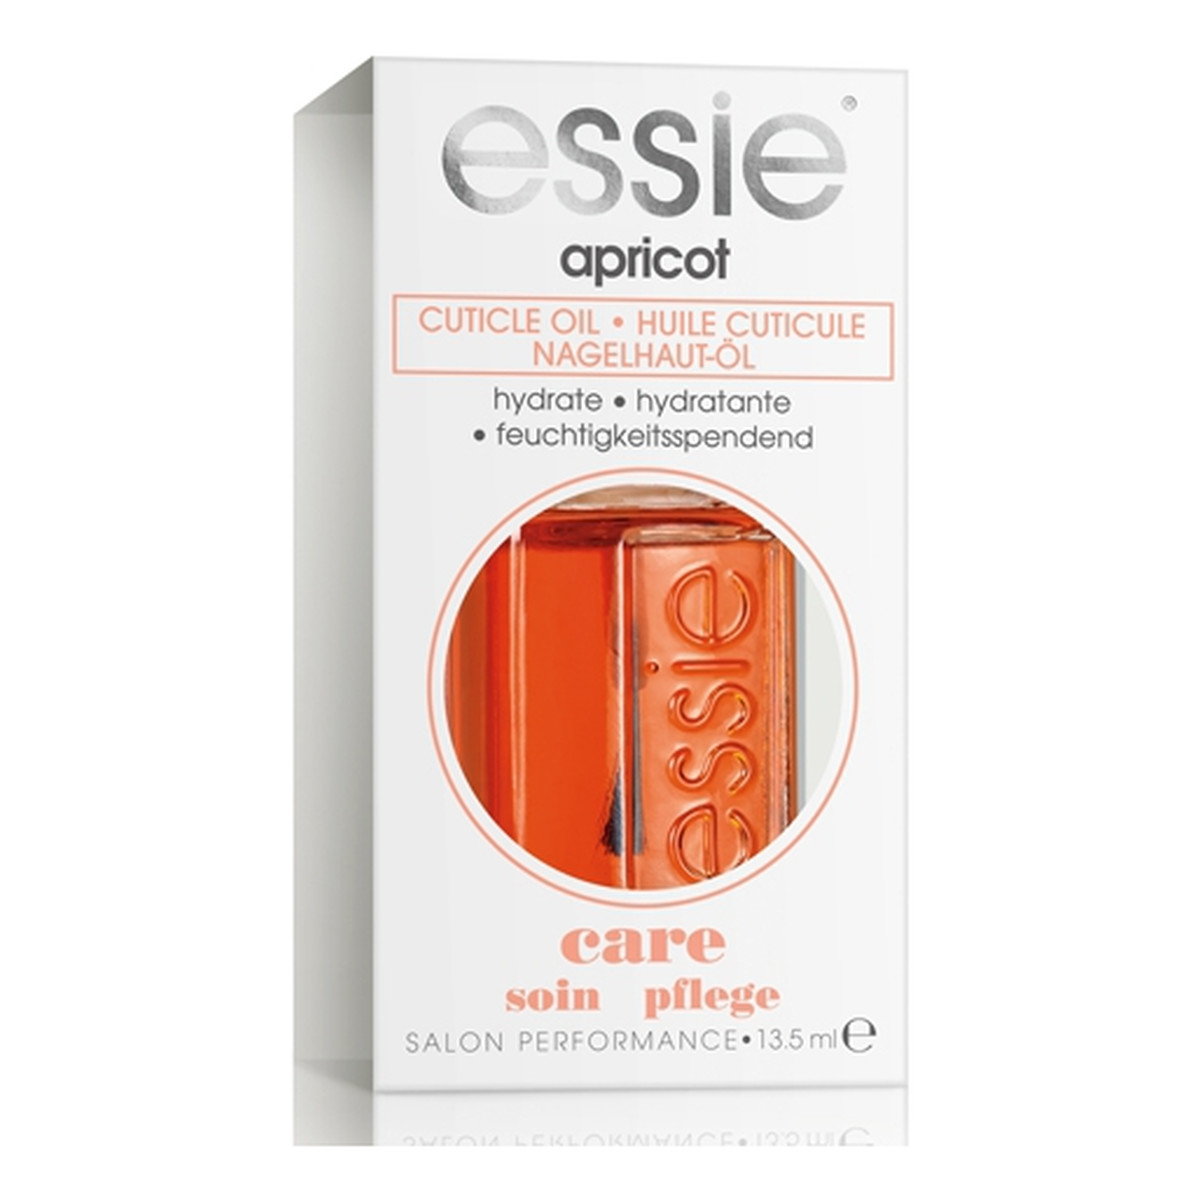 Essie Apricot Care nawilżający olejek do skórek 13ml